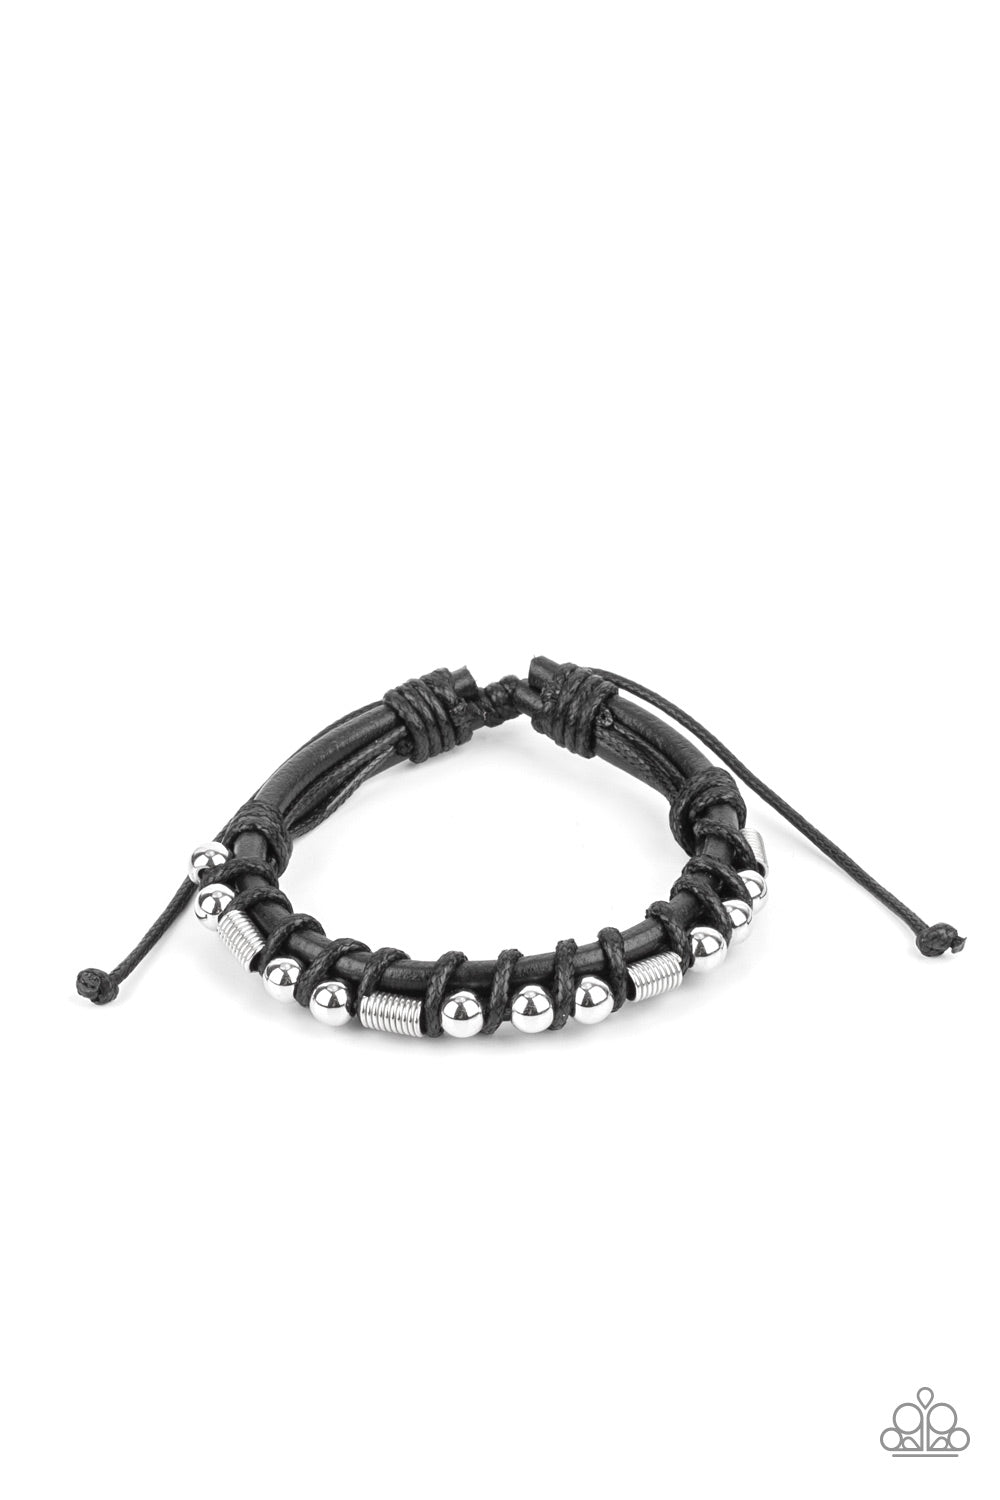 five-dollar-jewelry-bronco-brawler-black-bracelet-paparazzi-accessories